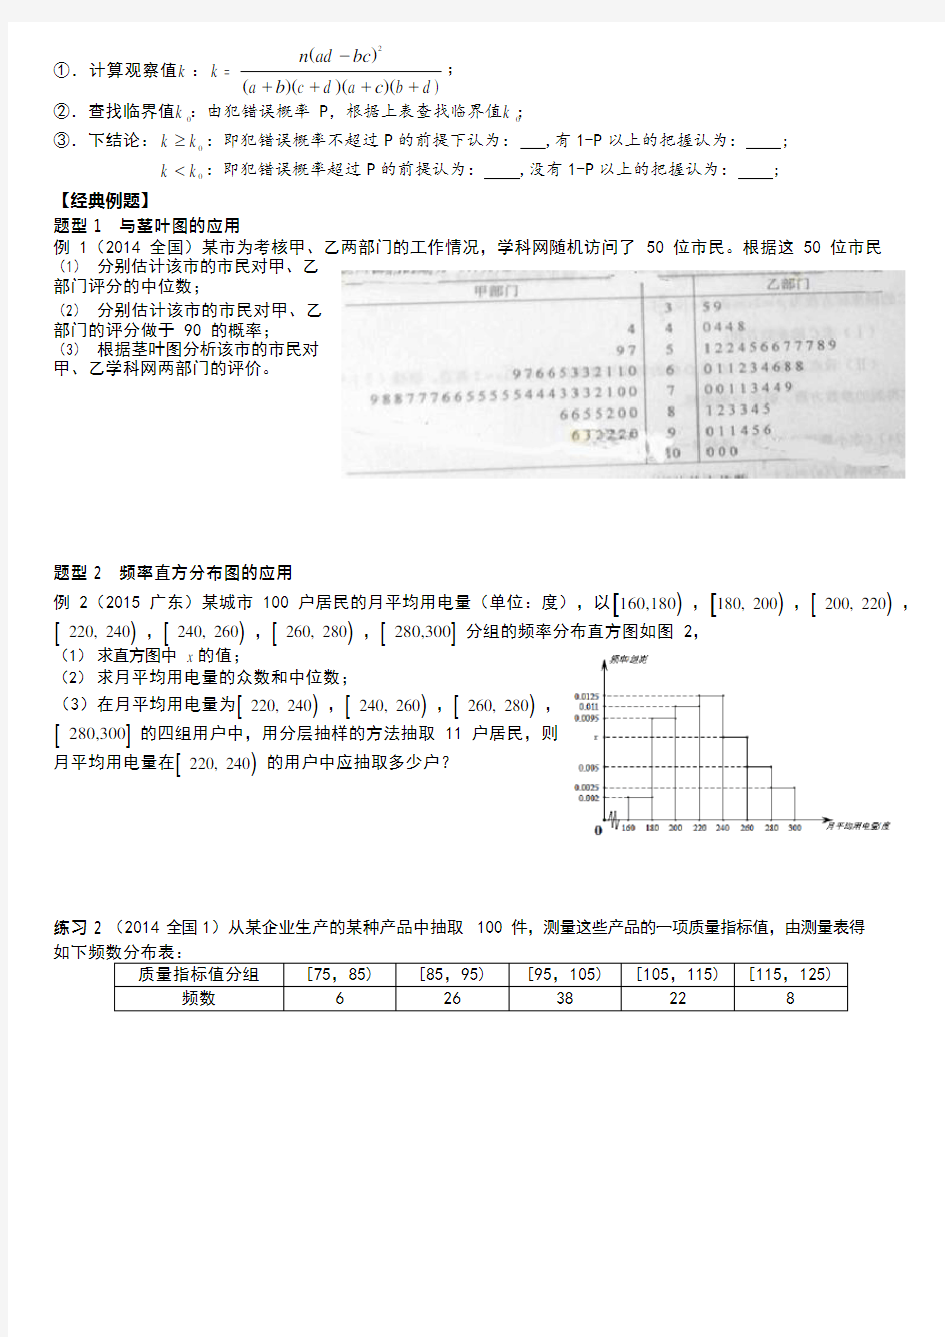 (最全)高中数学概率统计知识点总结(最新整理)